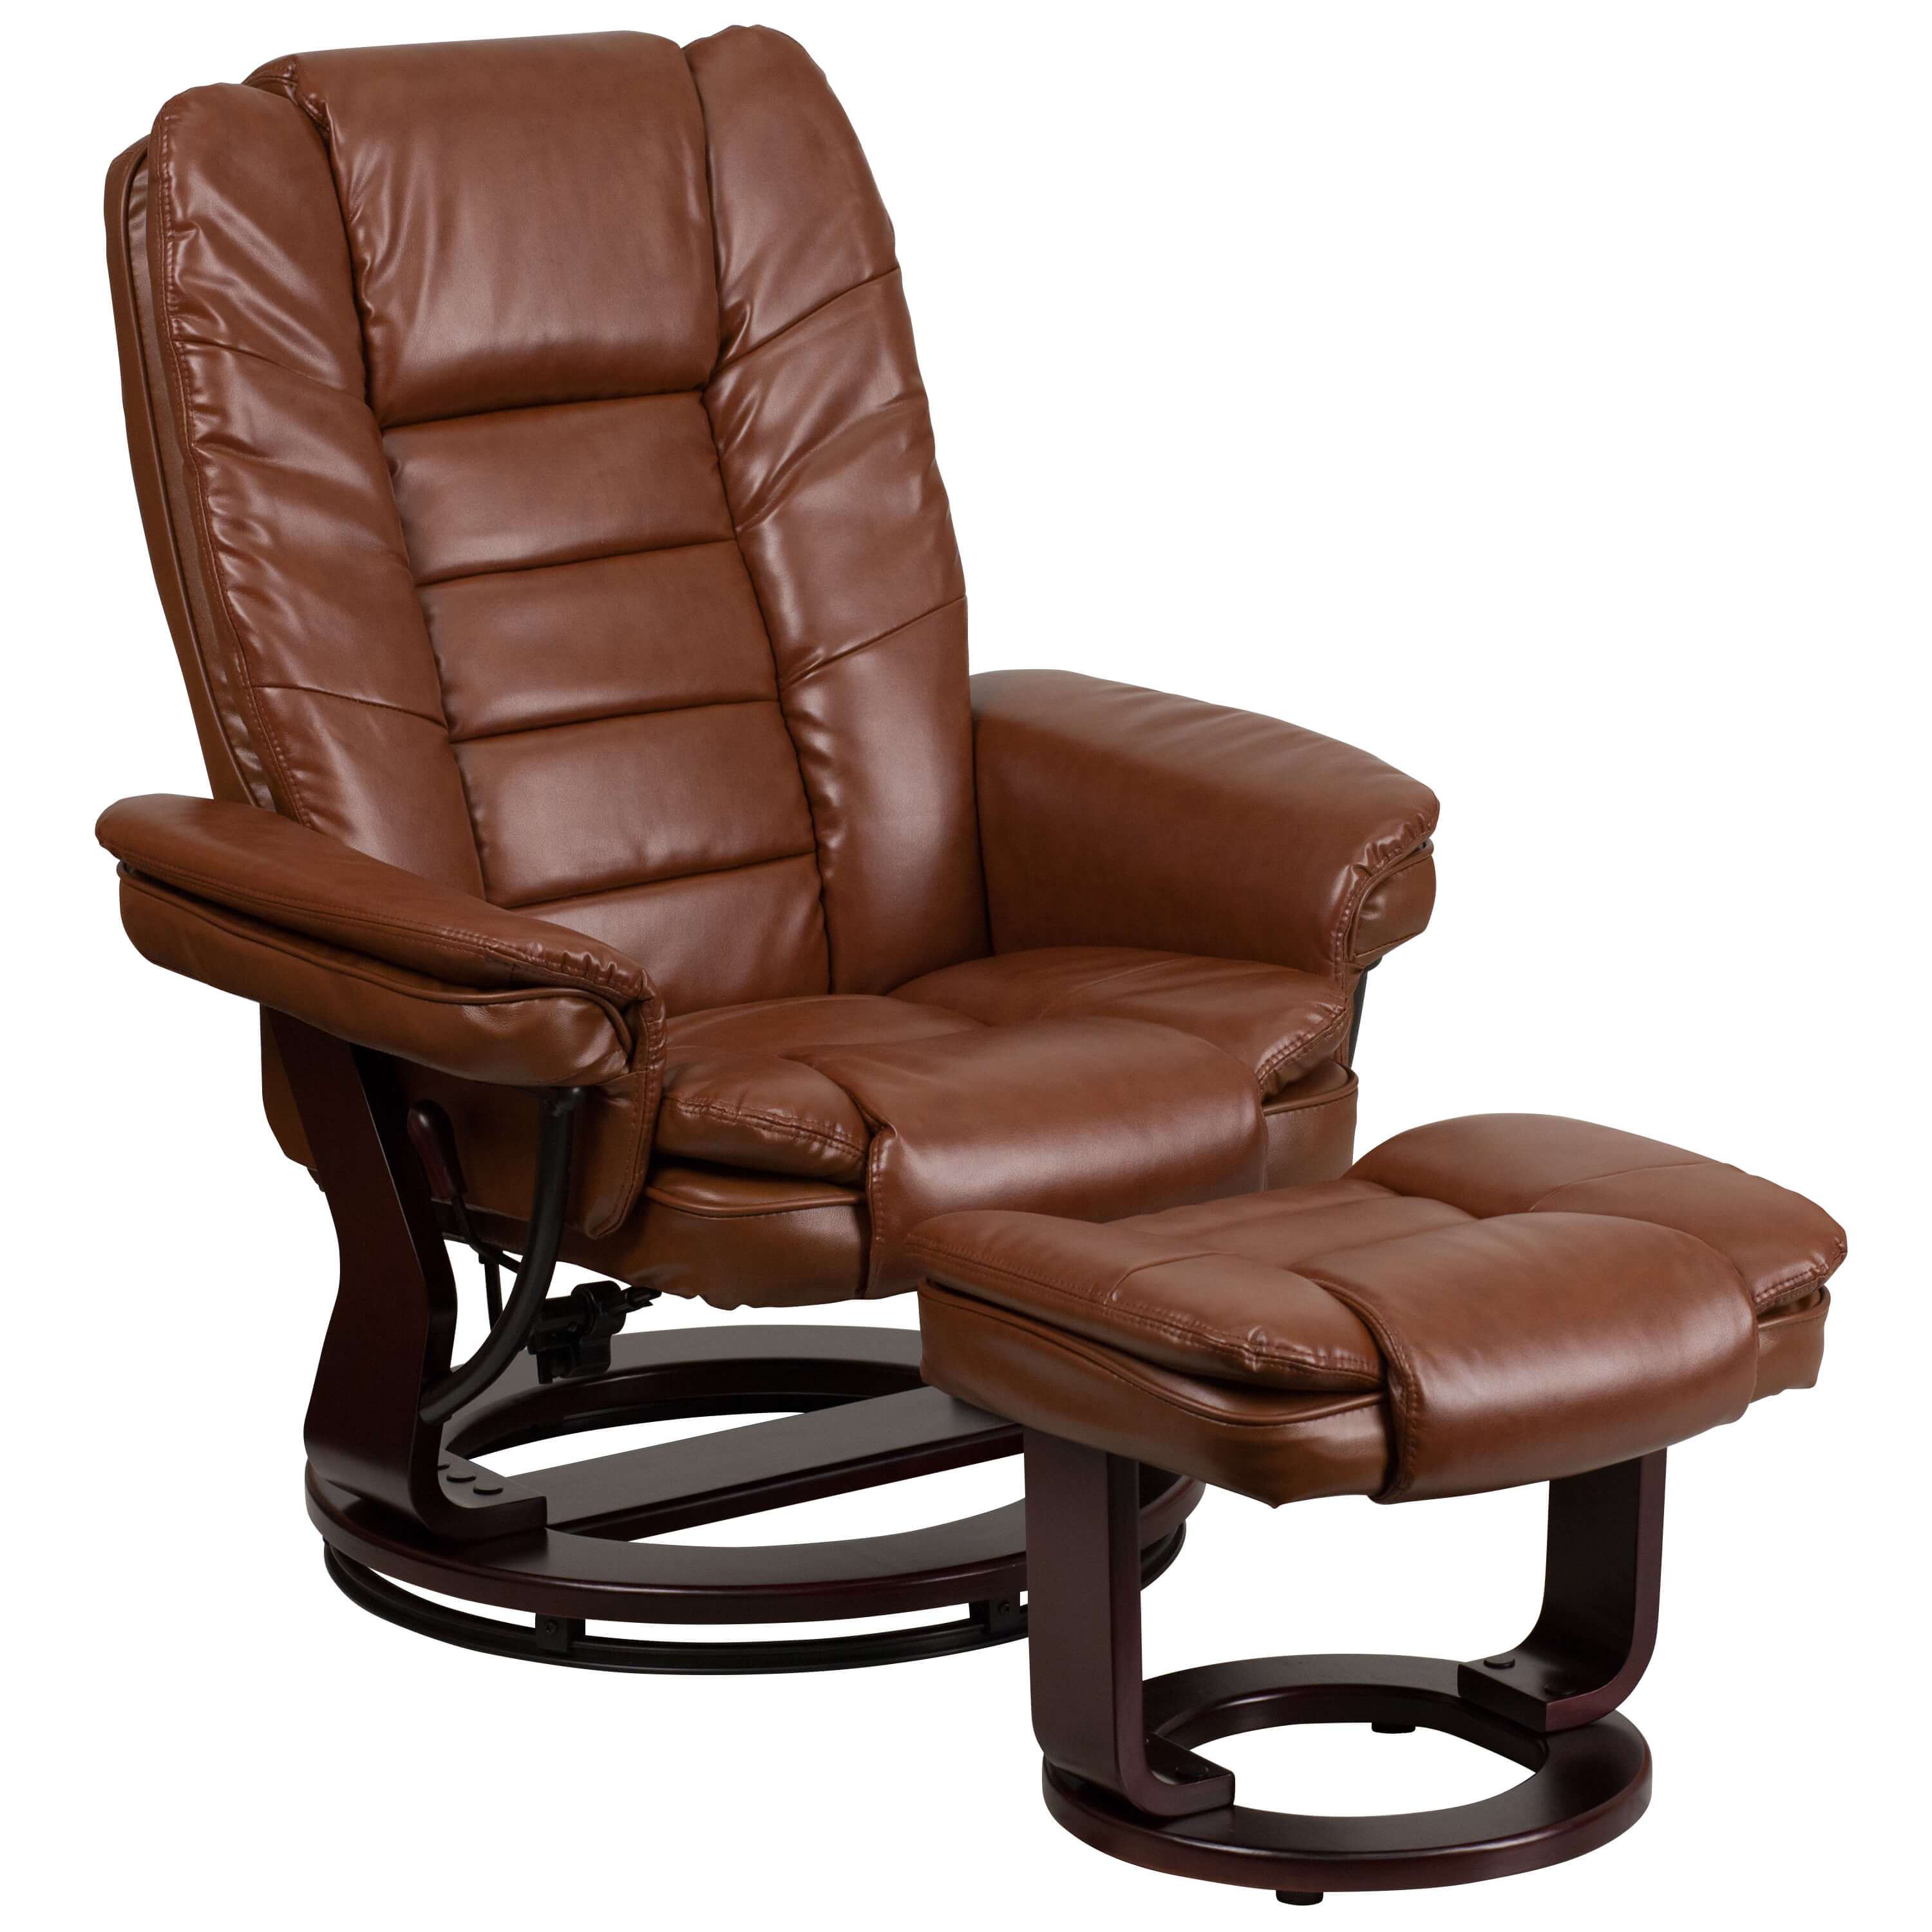 contemporary-recliners-contemporary-recliner-chair.jpg